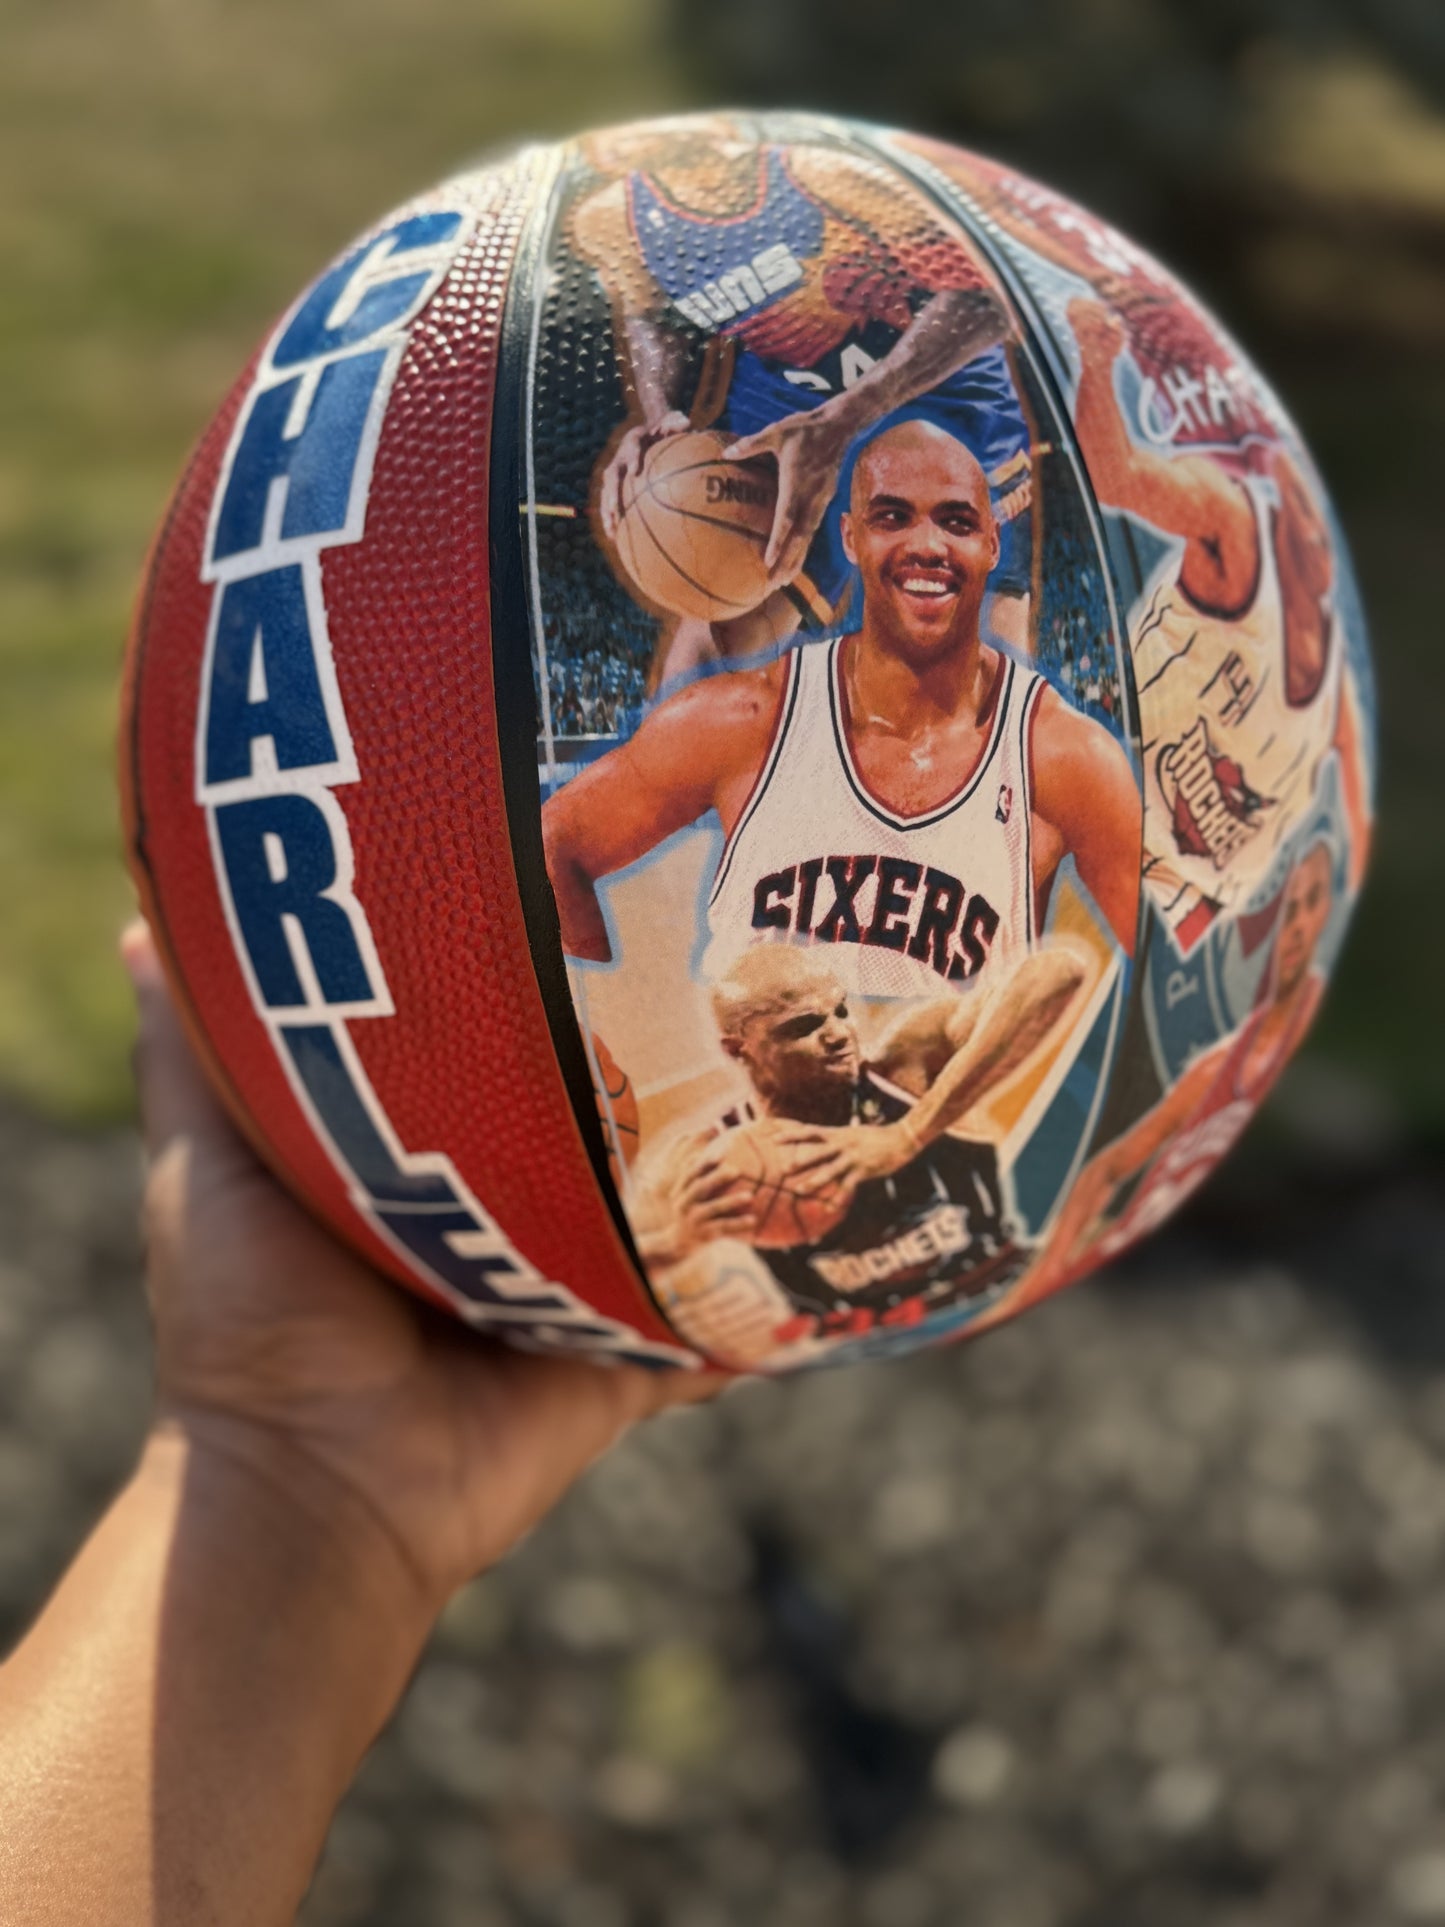 Custom Basketball with photos